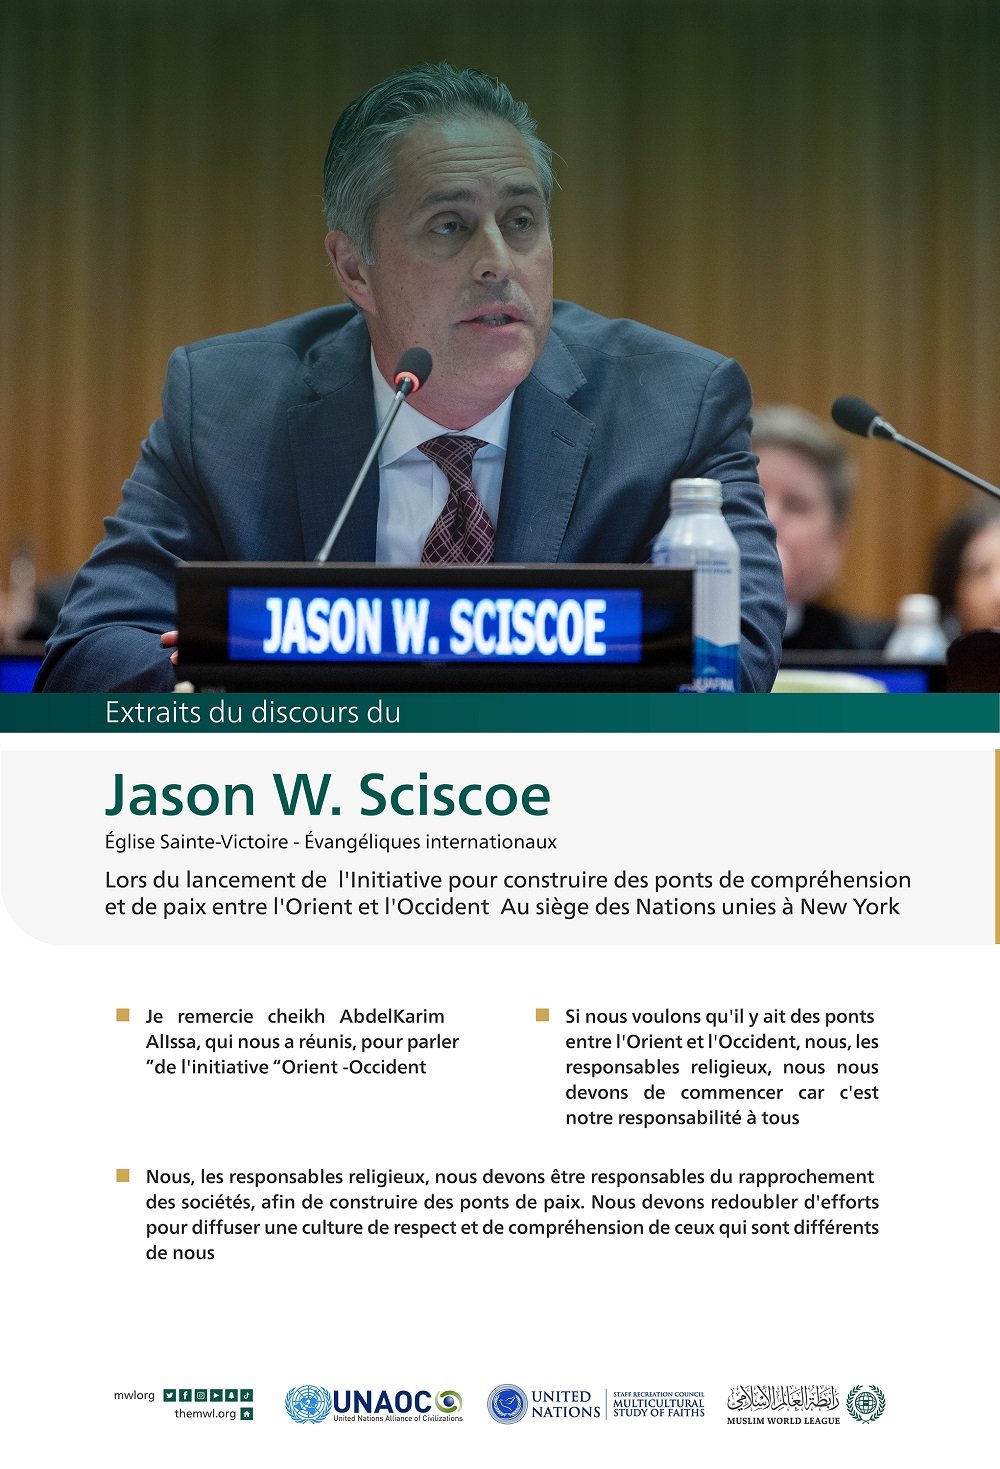 Extraits du discours de Jason W. Sciscoe lors du lancement de l'initiative de la Ligue islamique mondiale pour "construire des ponts de compréhension et de paix entre l'Orient et l'Occident " depuis le siège des Nations Unies à New York :